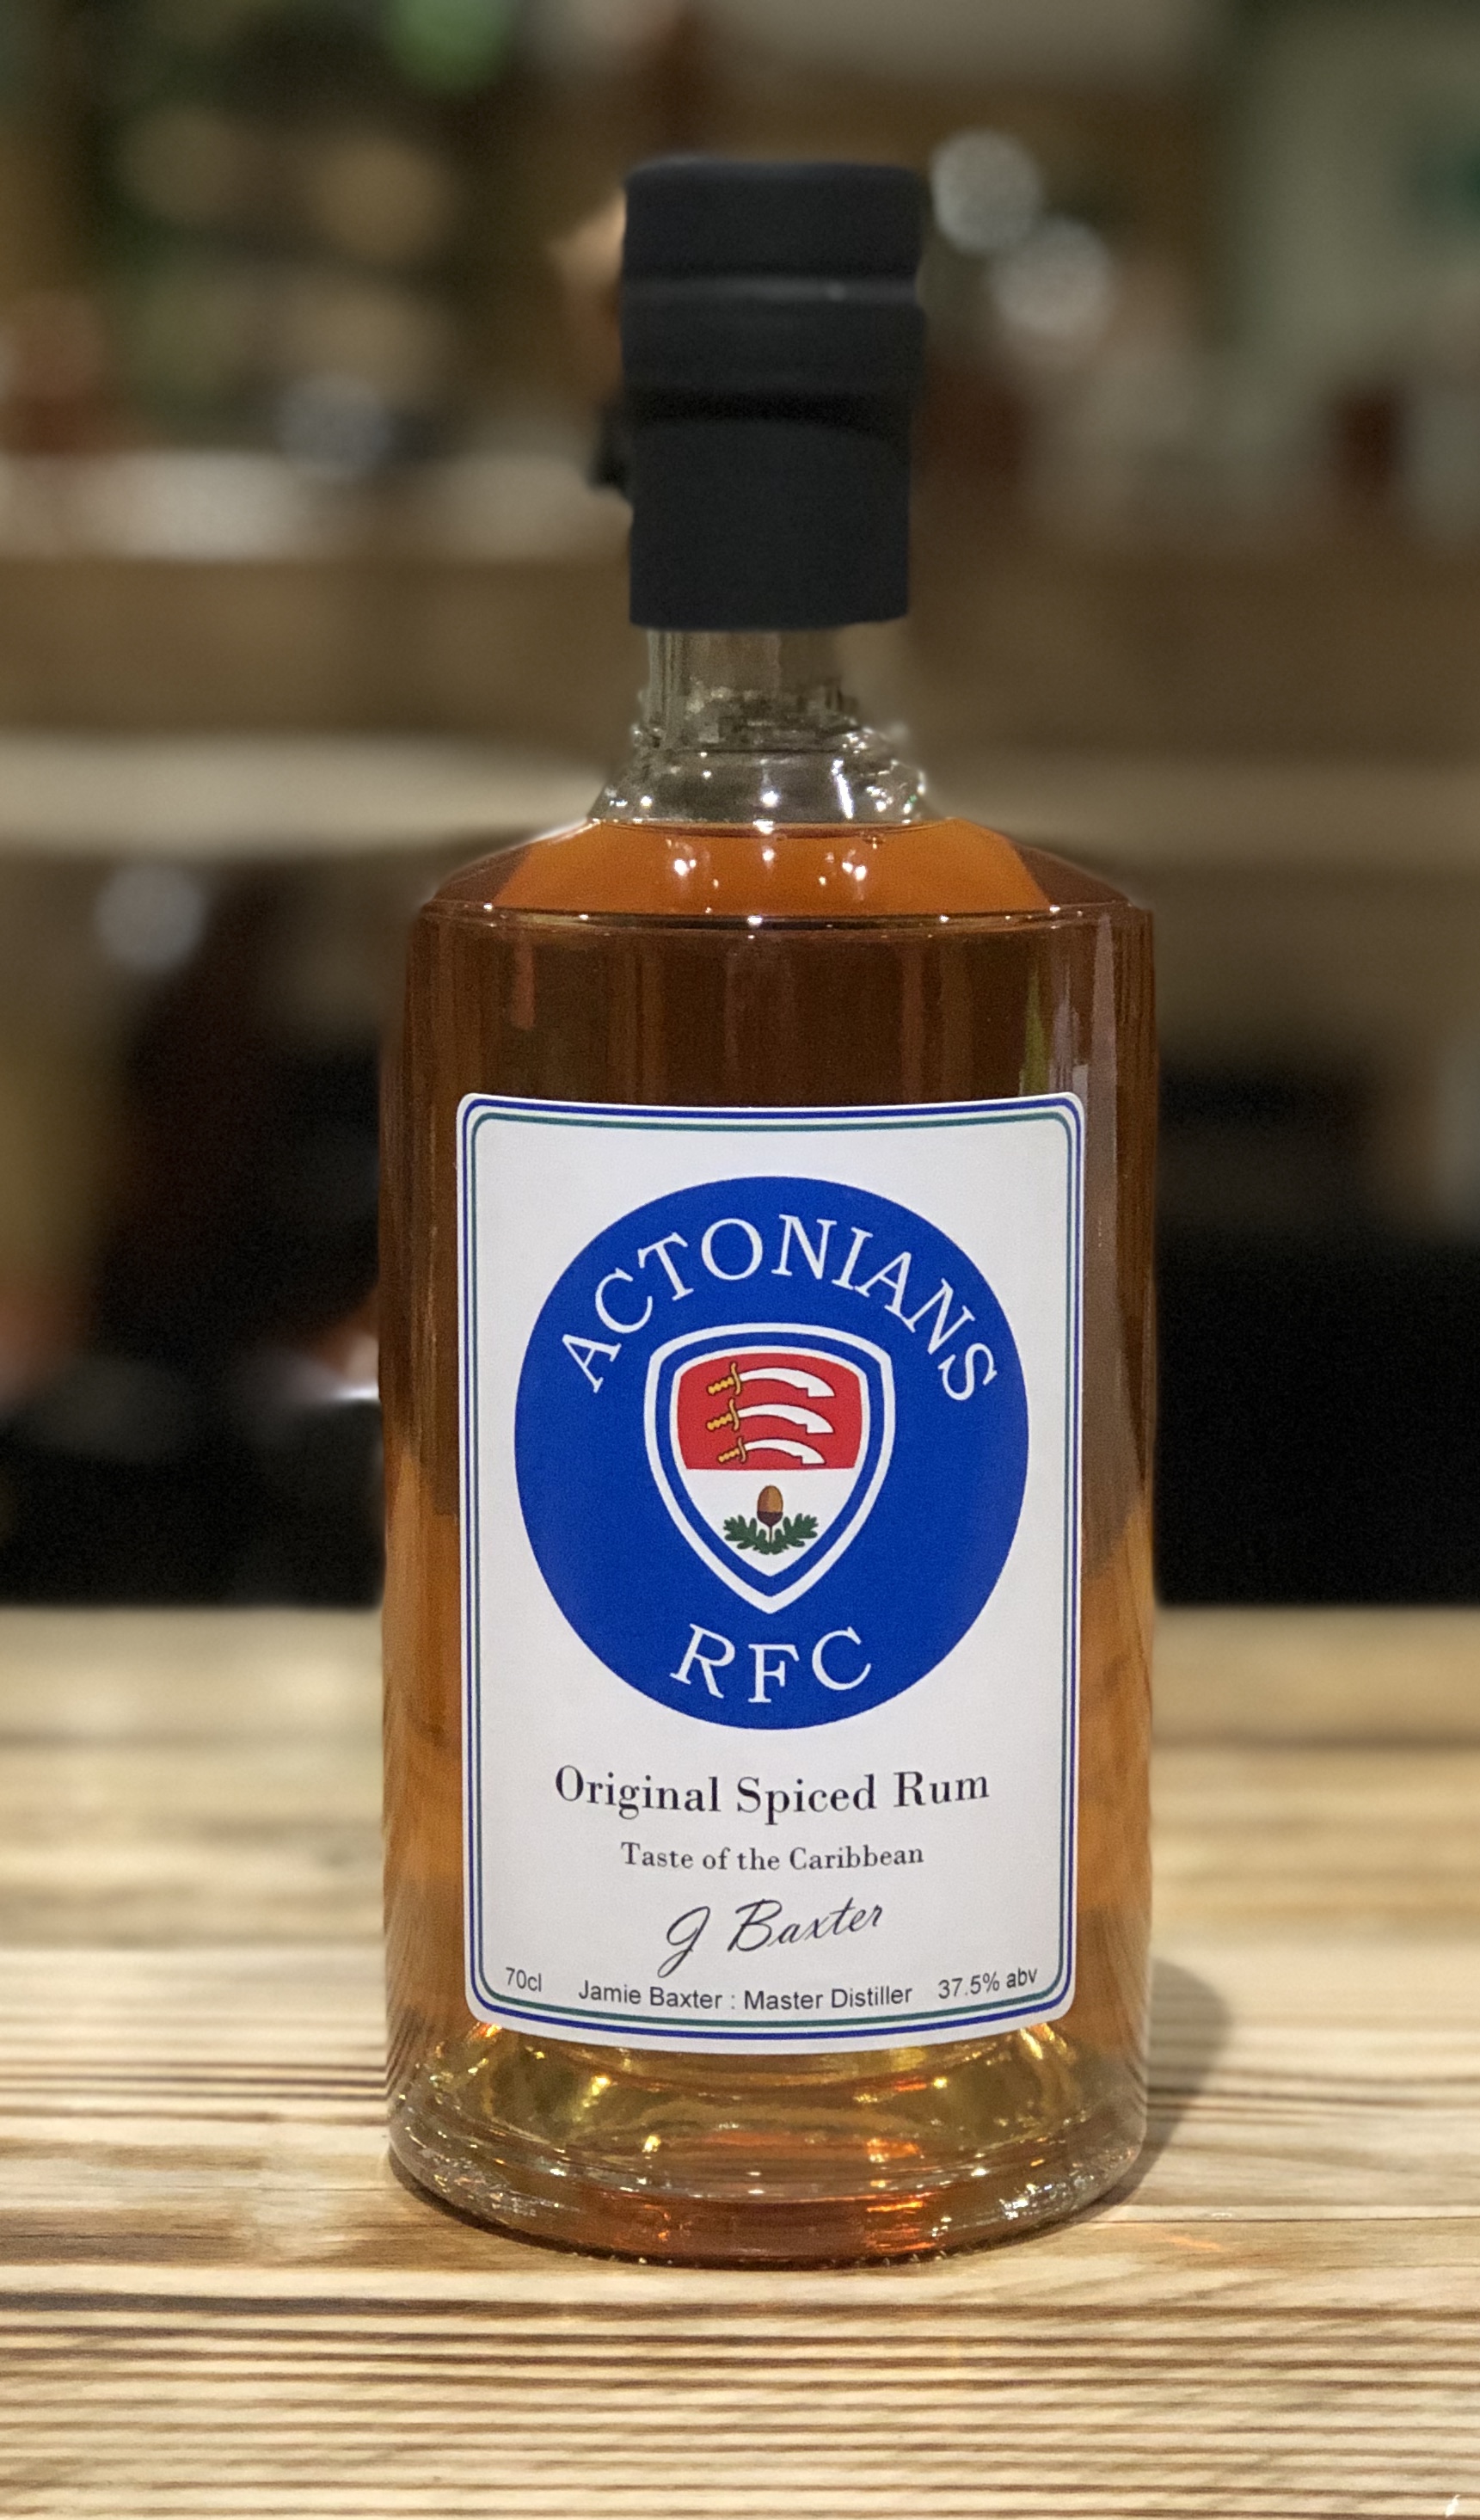 Actonians RFC 'Original Spiced Rum'